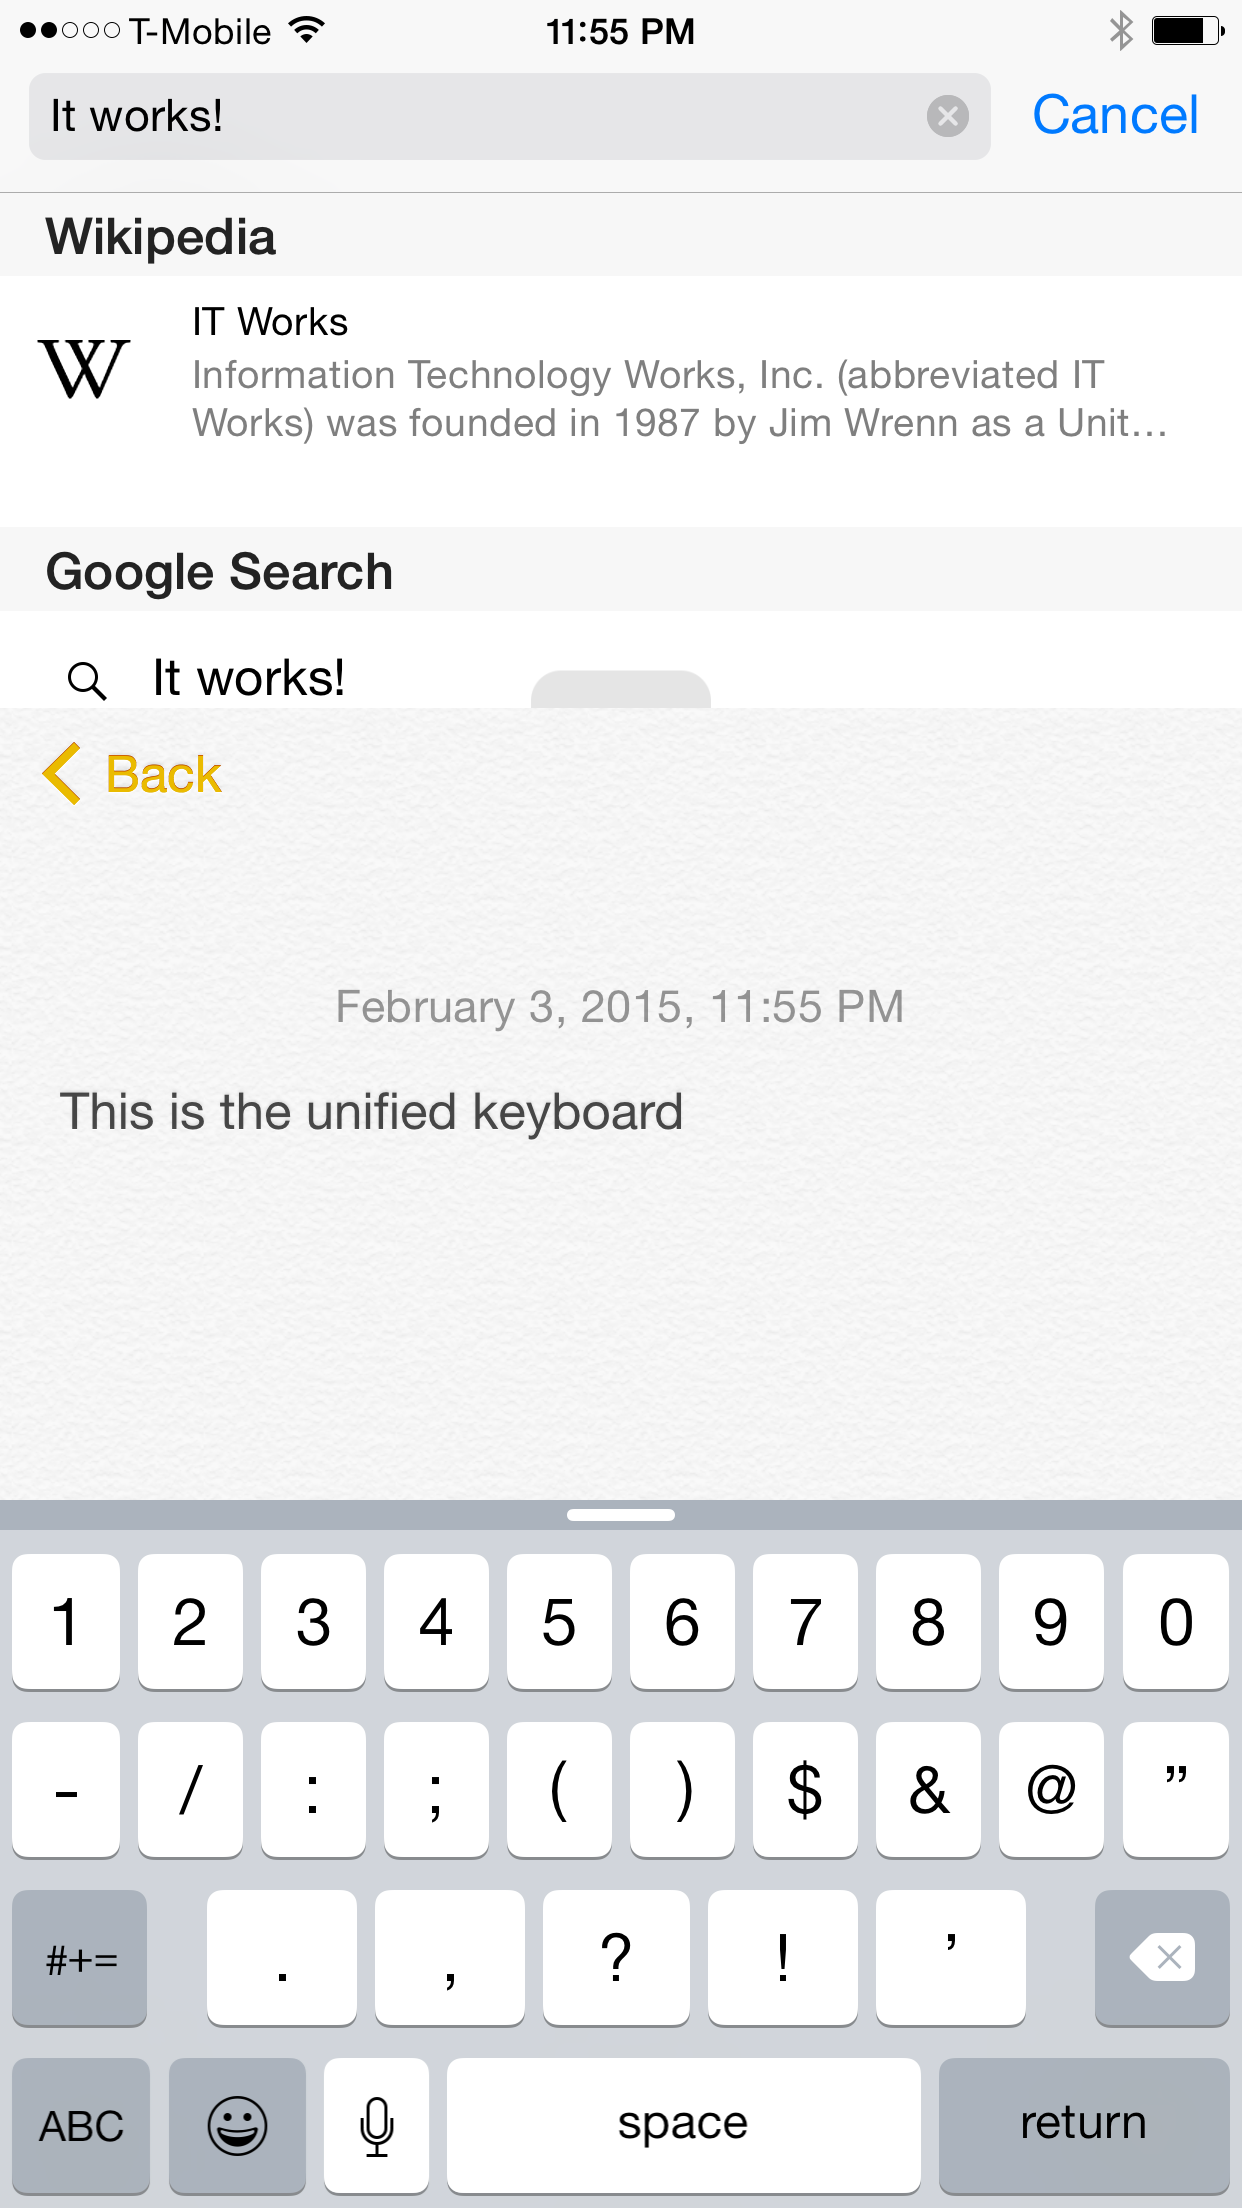 ReachApp Unified Keyboard